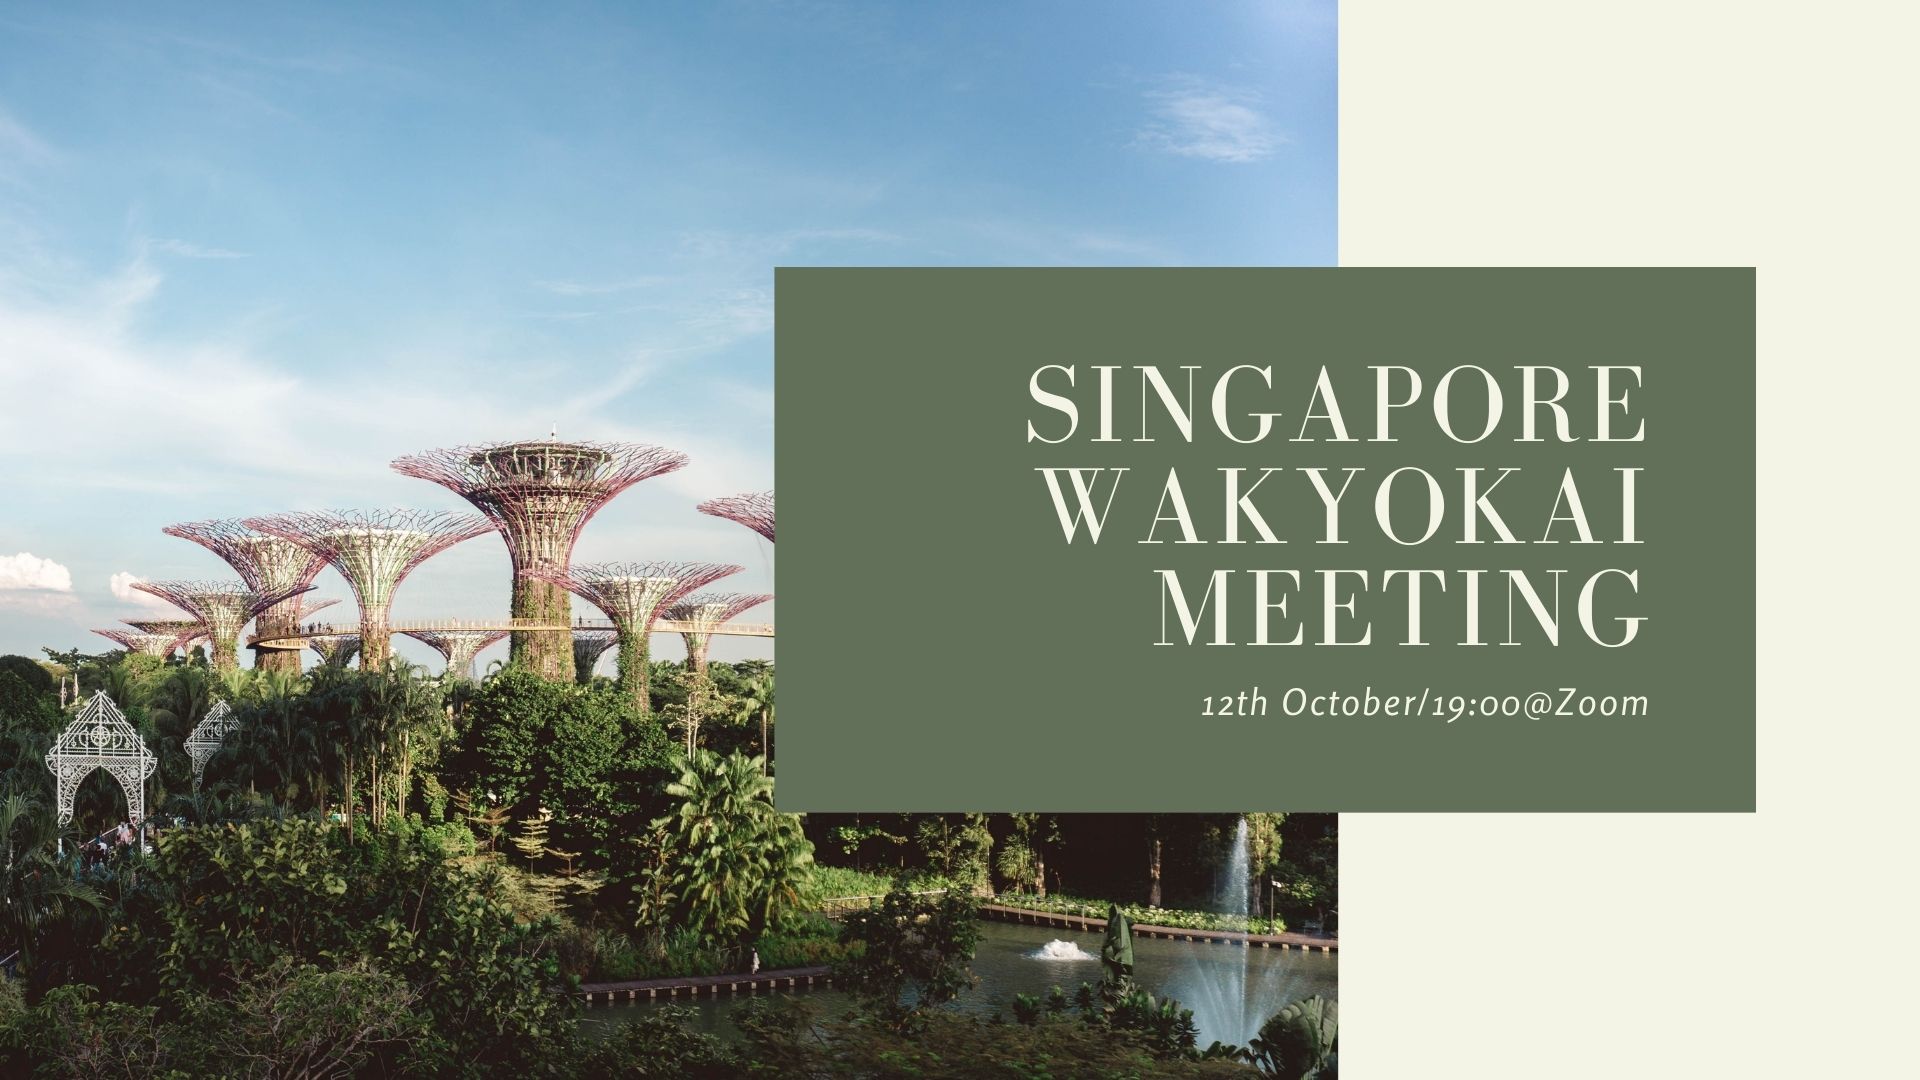 Singapore wakyokai meeting